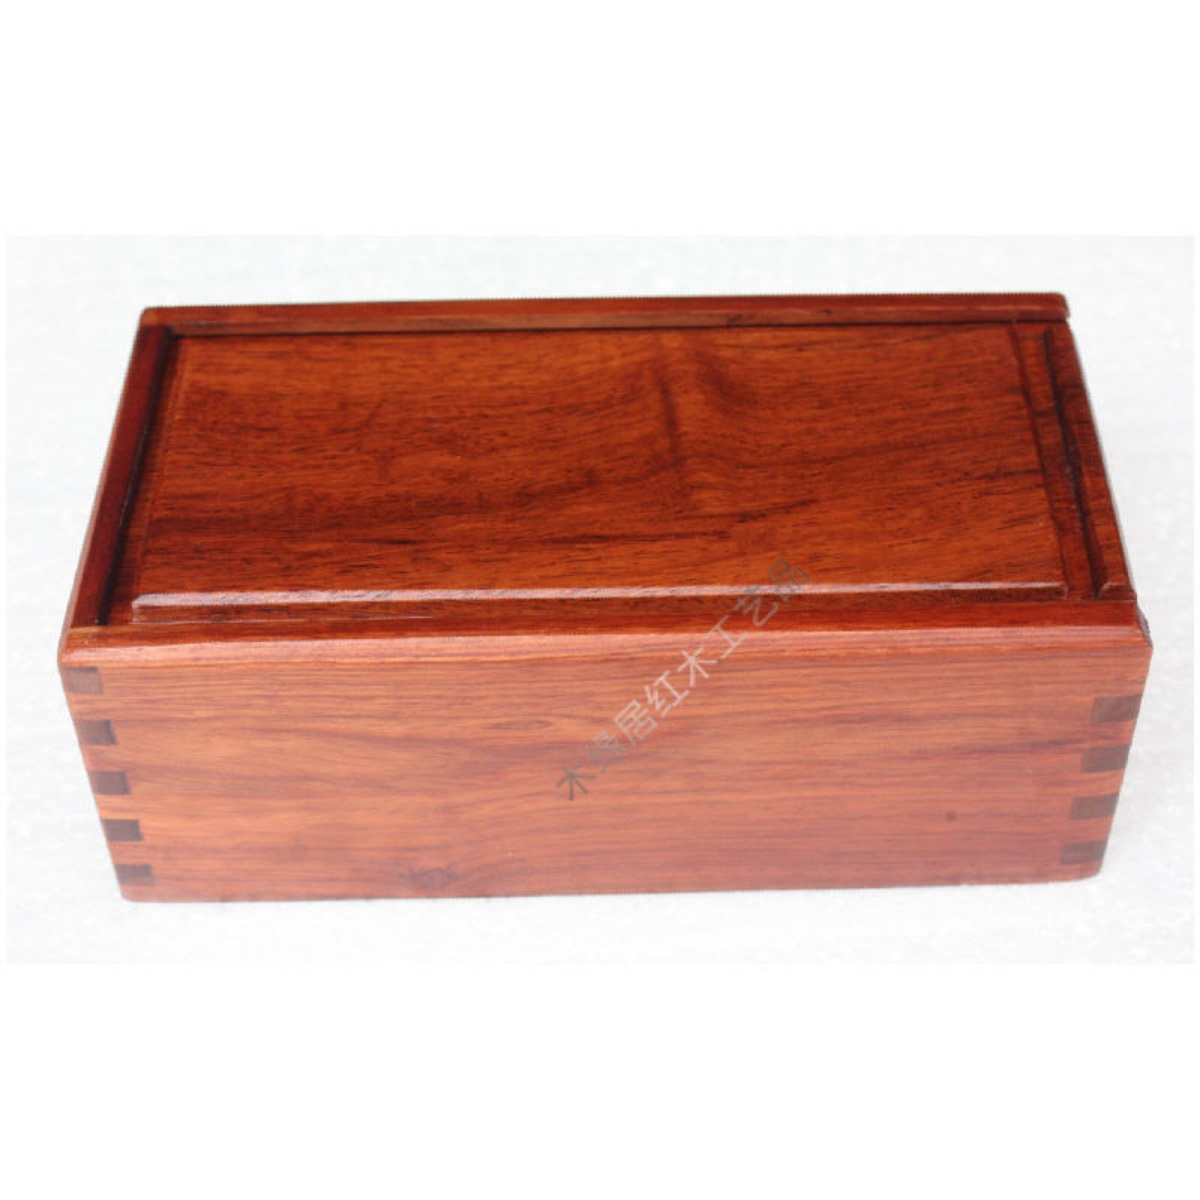 独板缅甸花梨木中式复古拉式首饰盒收纳盒核桃印章盒大果紫檀